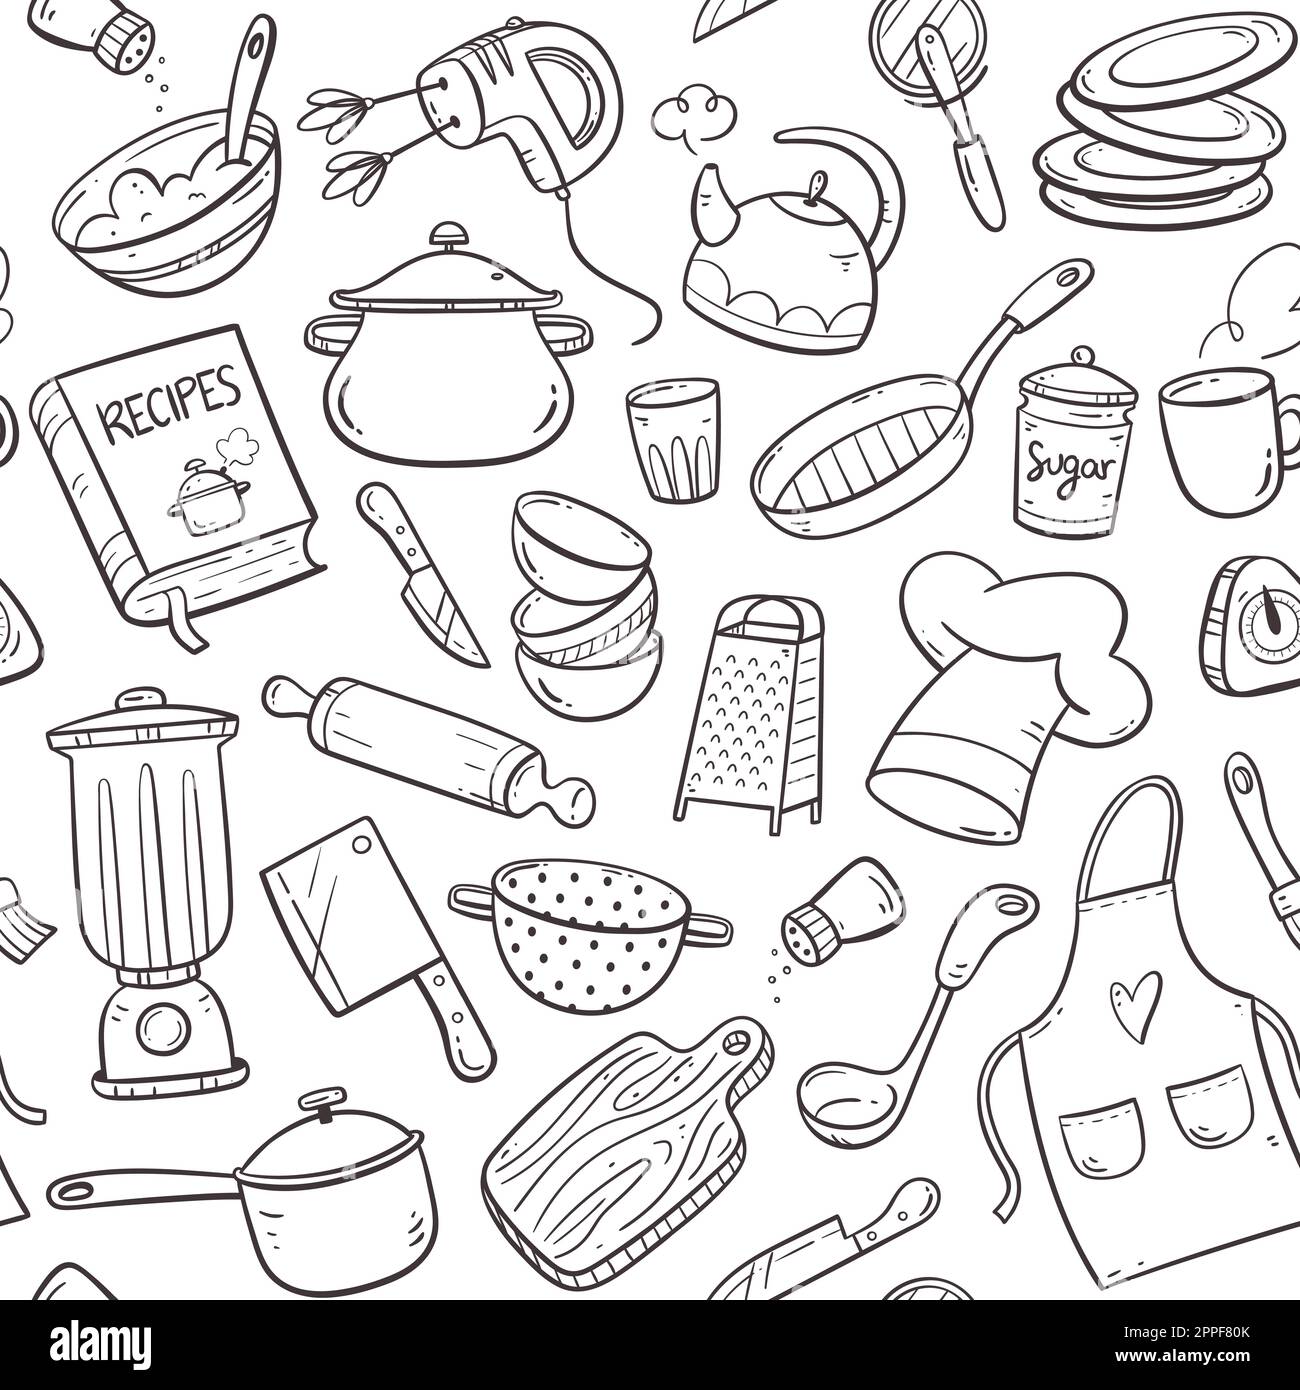 https://c8.alamy.com/compes/2ppf80k/herramientas-de-cocina-y-electrodomesticos-doodle-patron-sin-fisuras-linda-ilustracion-con-objetos-de-cocina-aislados-en-formato-vectorial-utensilios-de-cocina-de-fondo-2ppf80k.jpg